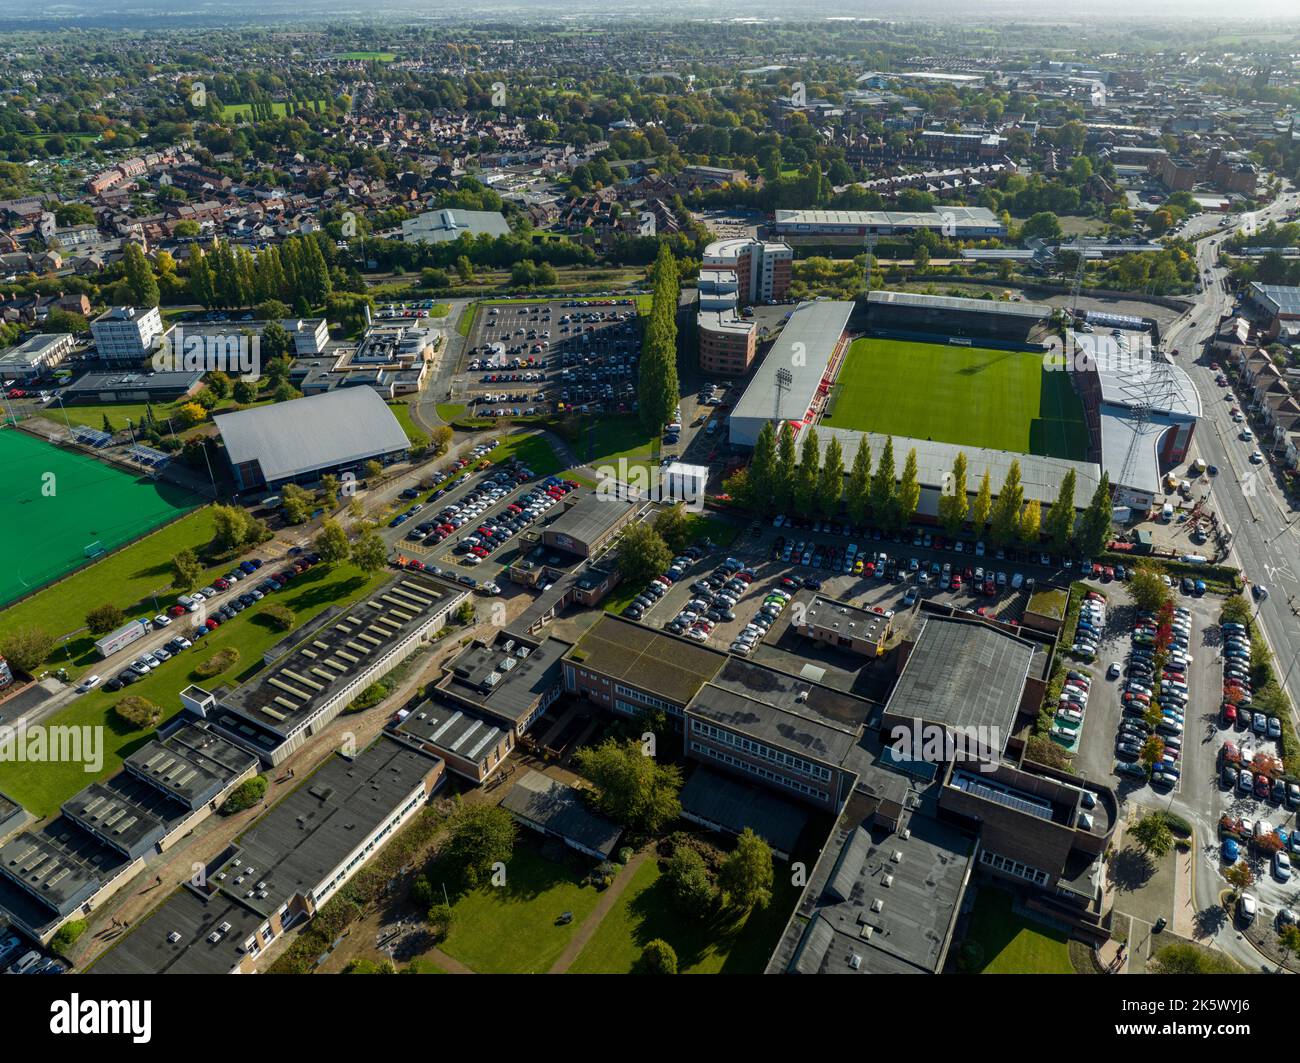 Willkommen im Wrexham Football Club, dem berühmten Pferderennbahn-Gelände des Deadpool-Stars Ryan Reynolds von der Air Aerial Drone Images, das Mcelhenney raubt Stockfoto